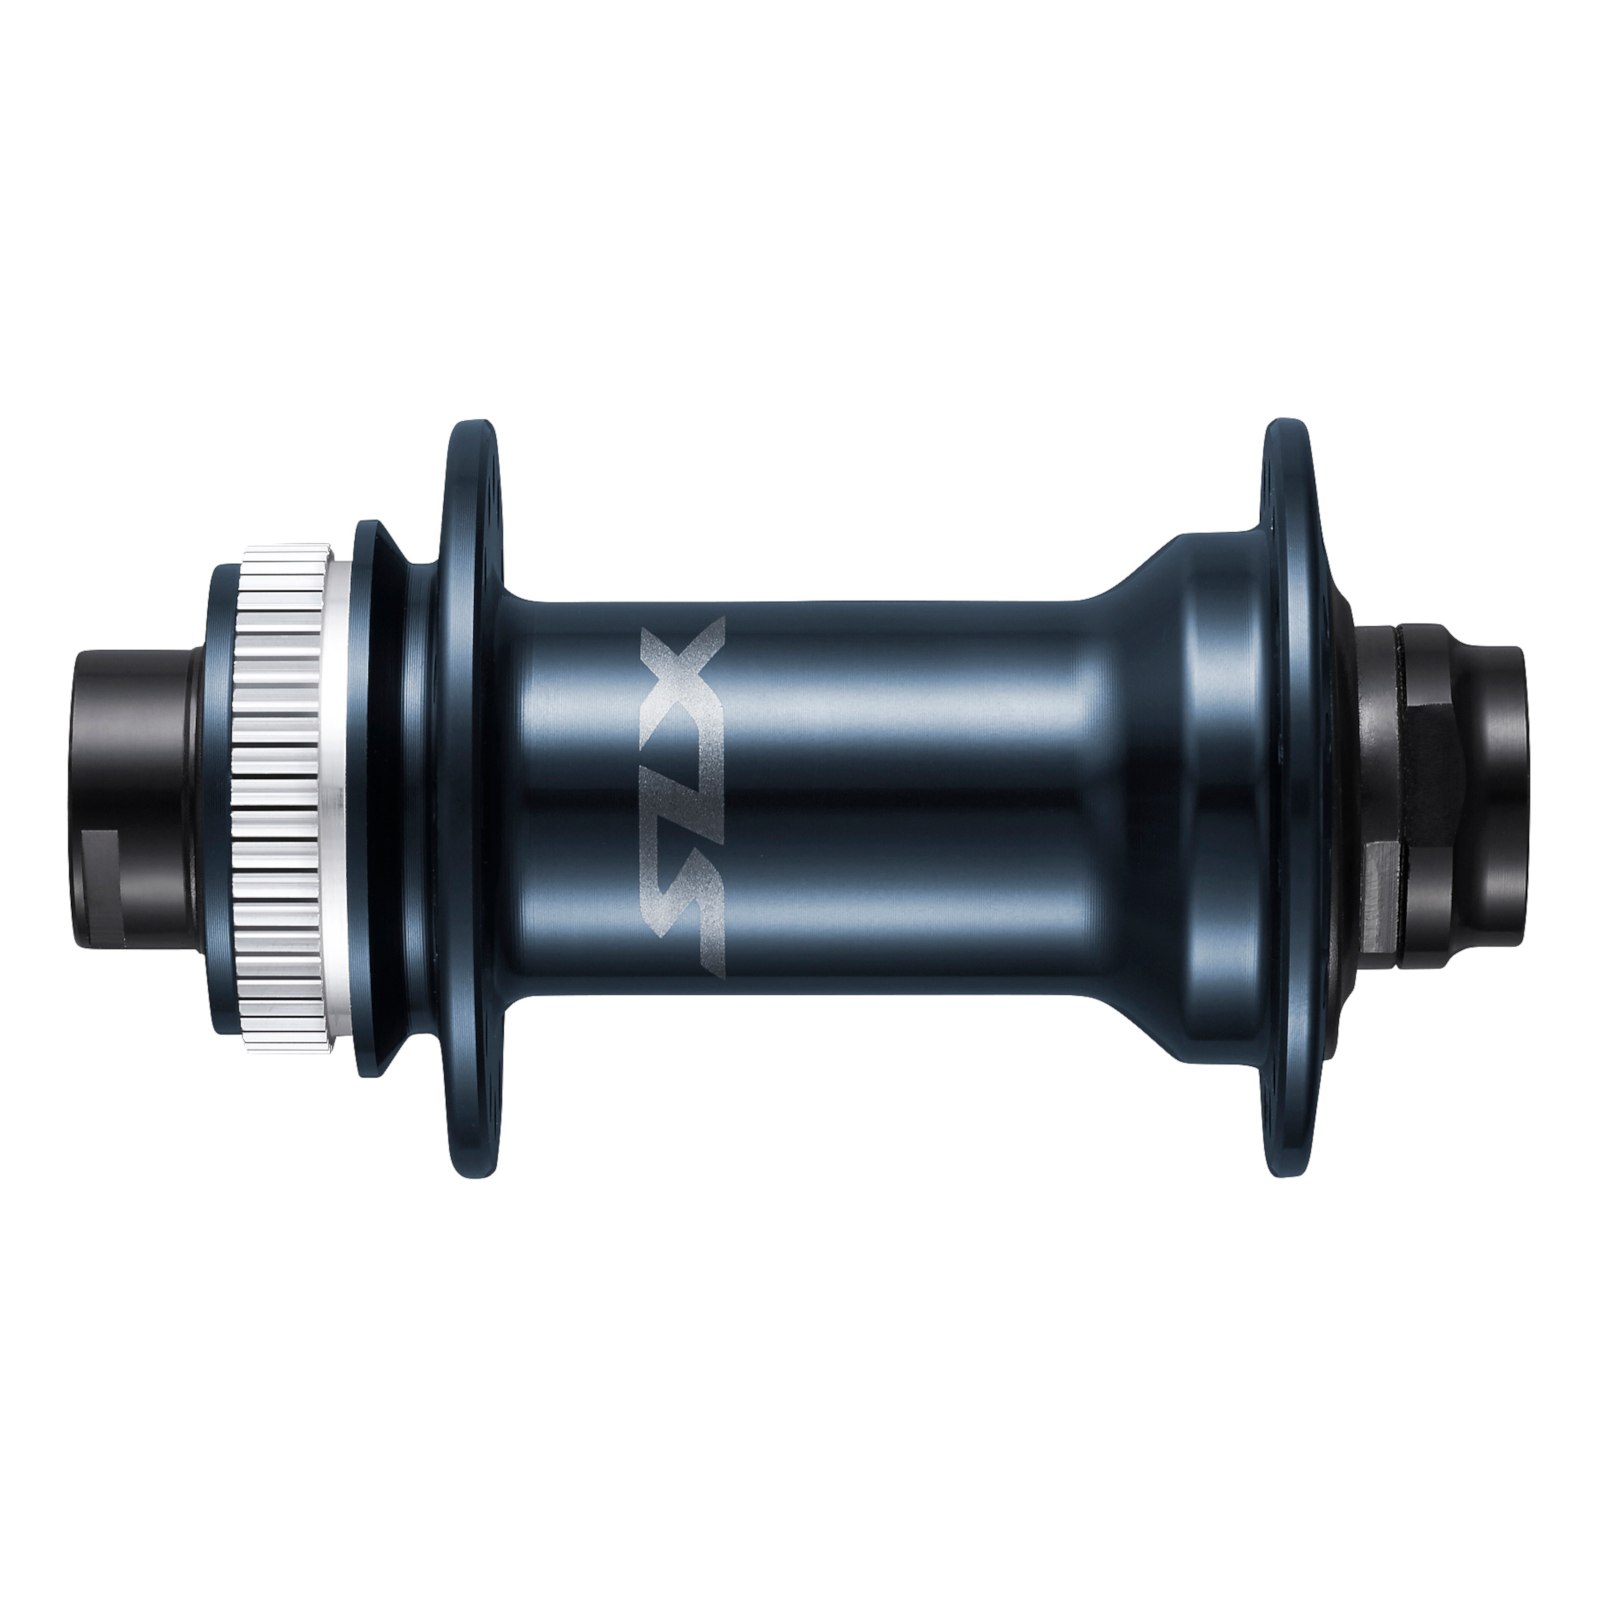 Produktbild von Shimano SLX HB-M7110 Vorderradnabe - Centerlock - 15x100mm - E-Thru